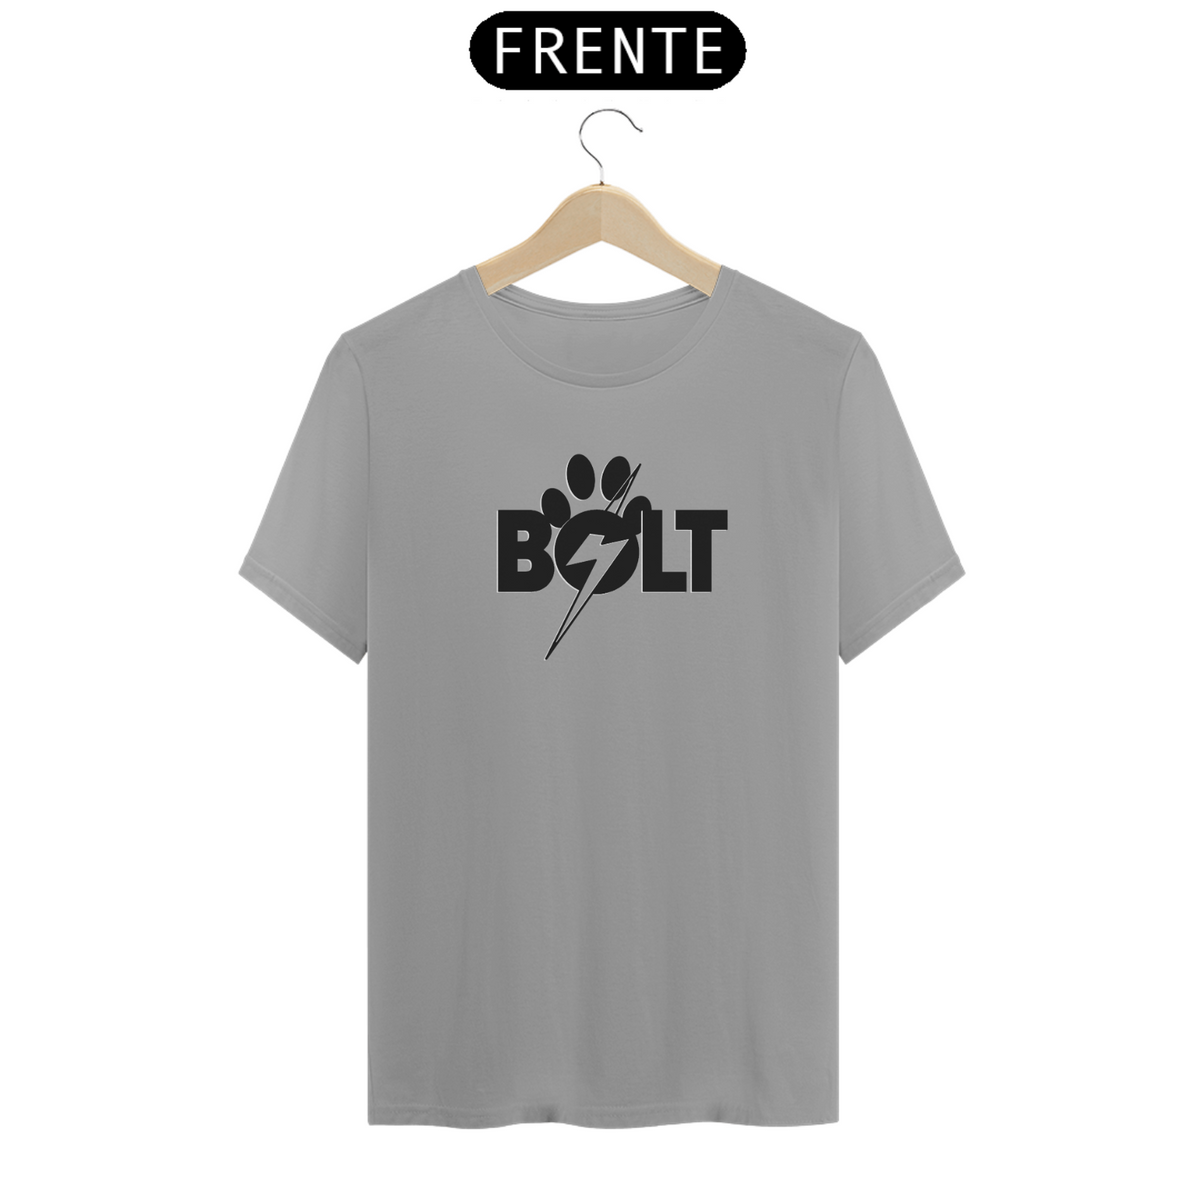 Nome do produto: Bolt Super cão - Camiseta Unissex